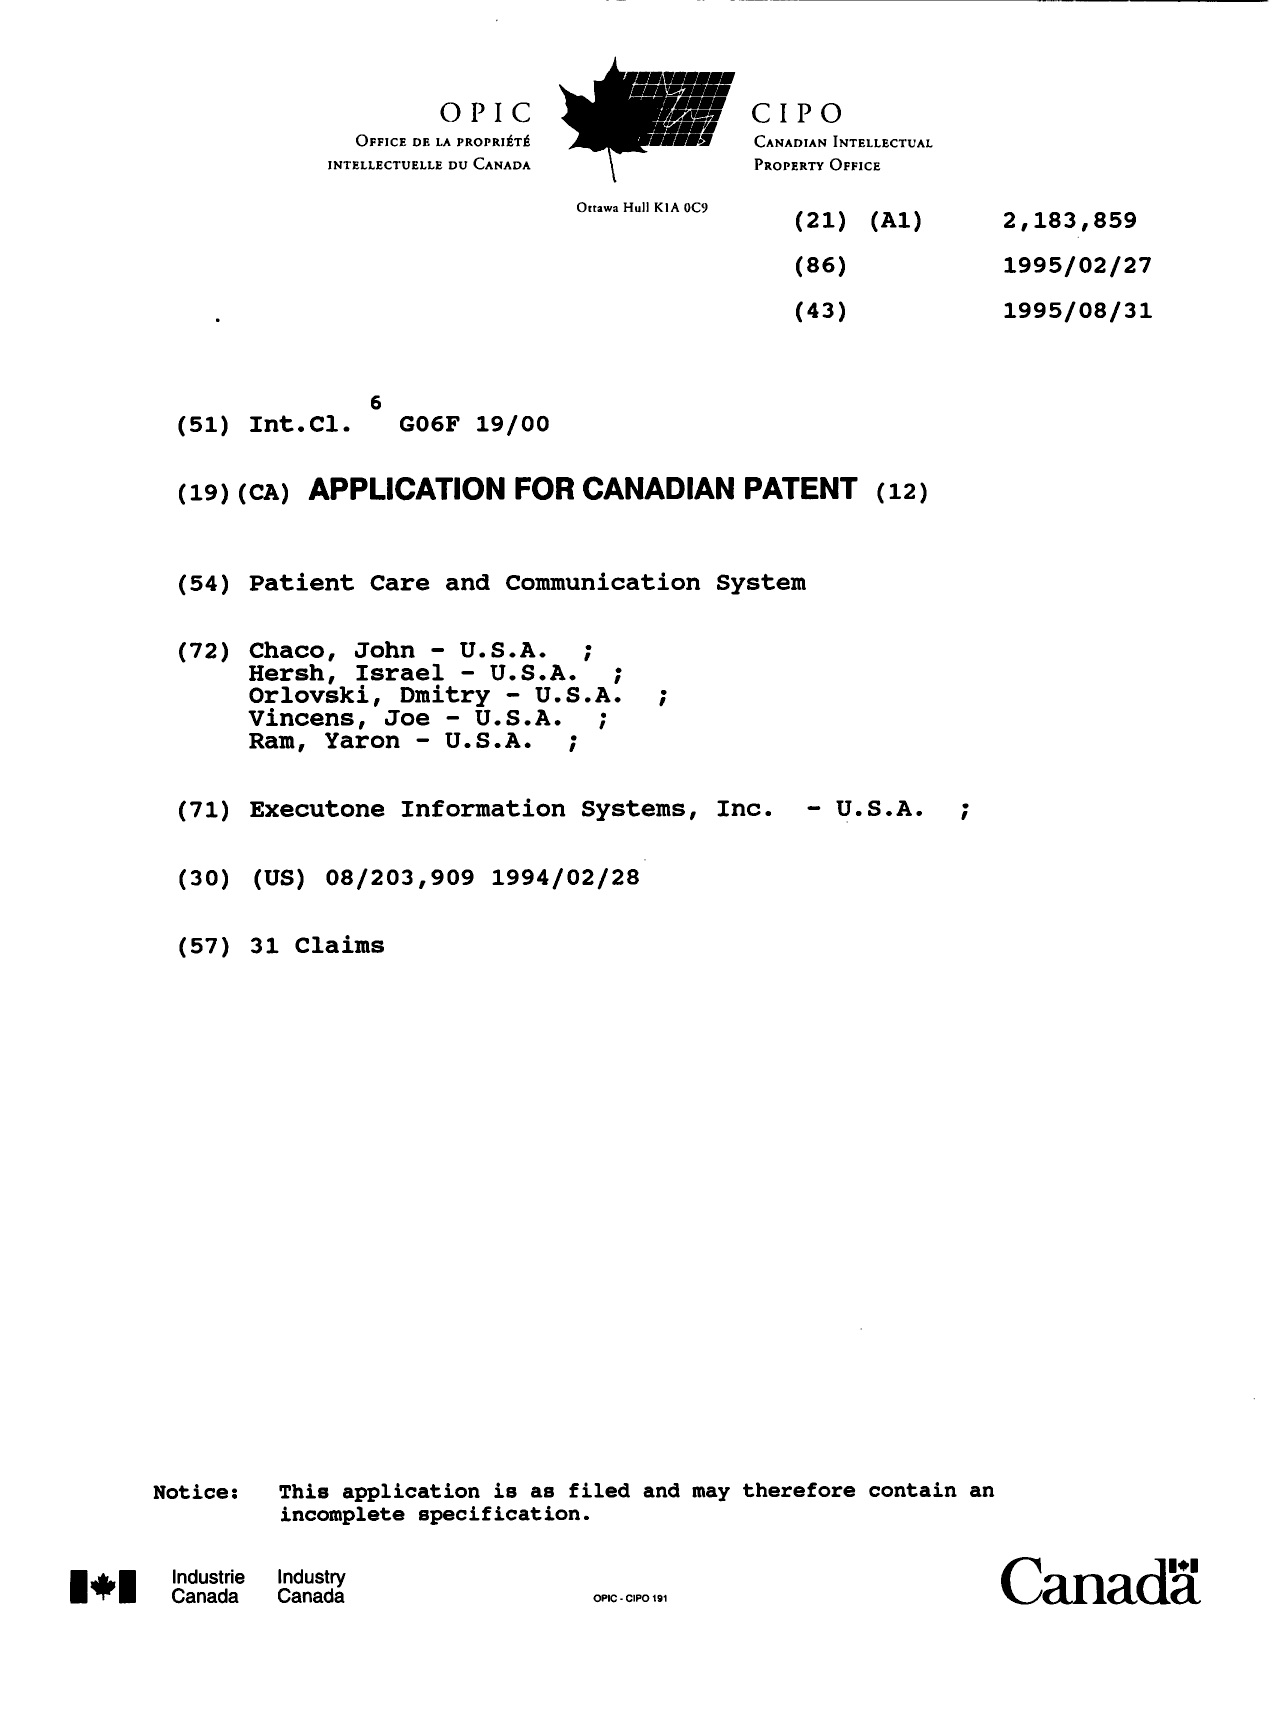 Document de brevet canadien 2183859. Page couverture 19961211. Image 1 de 1